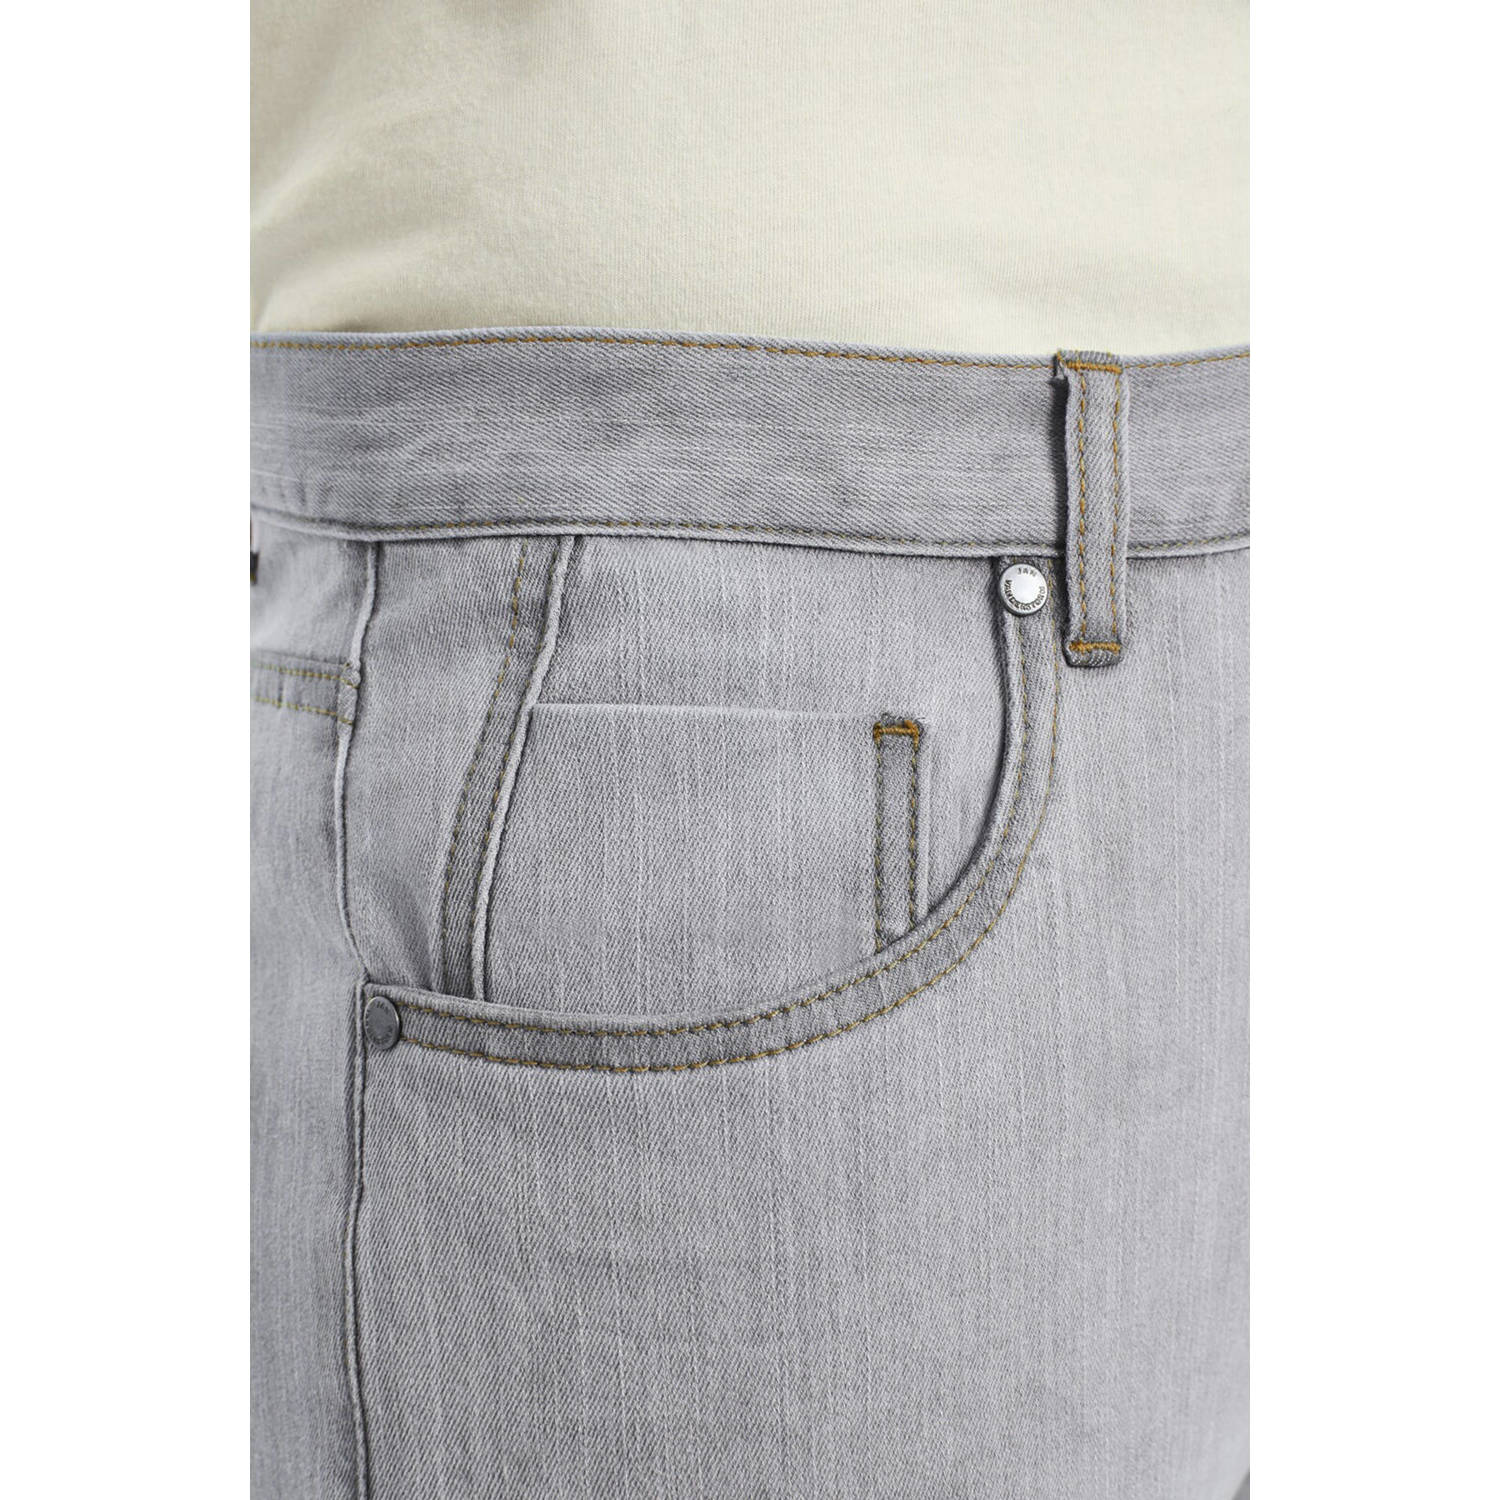 Jan Vanderstorm +FIT Collectie loose fit jeans SEIBOLD Plus Size lichtgrijs